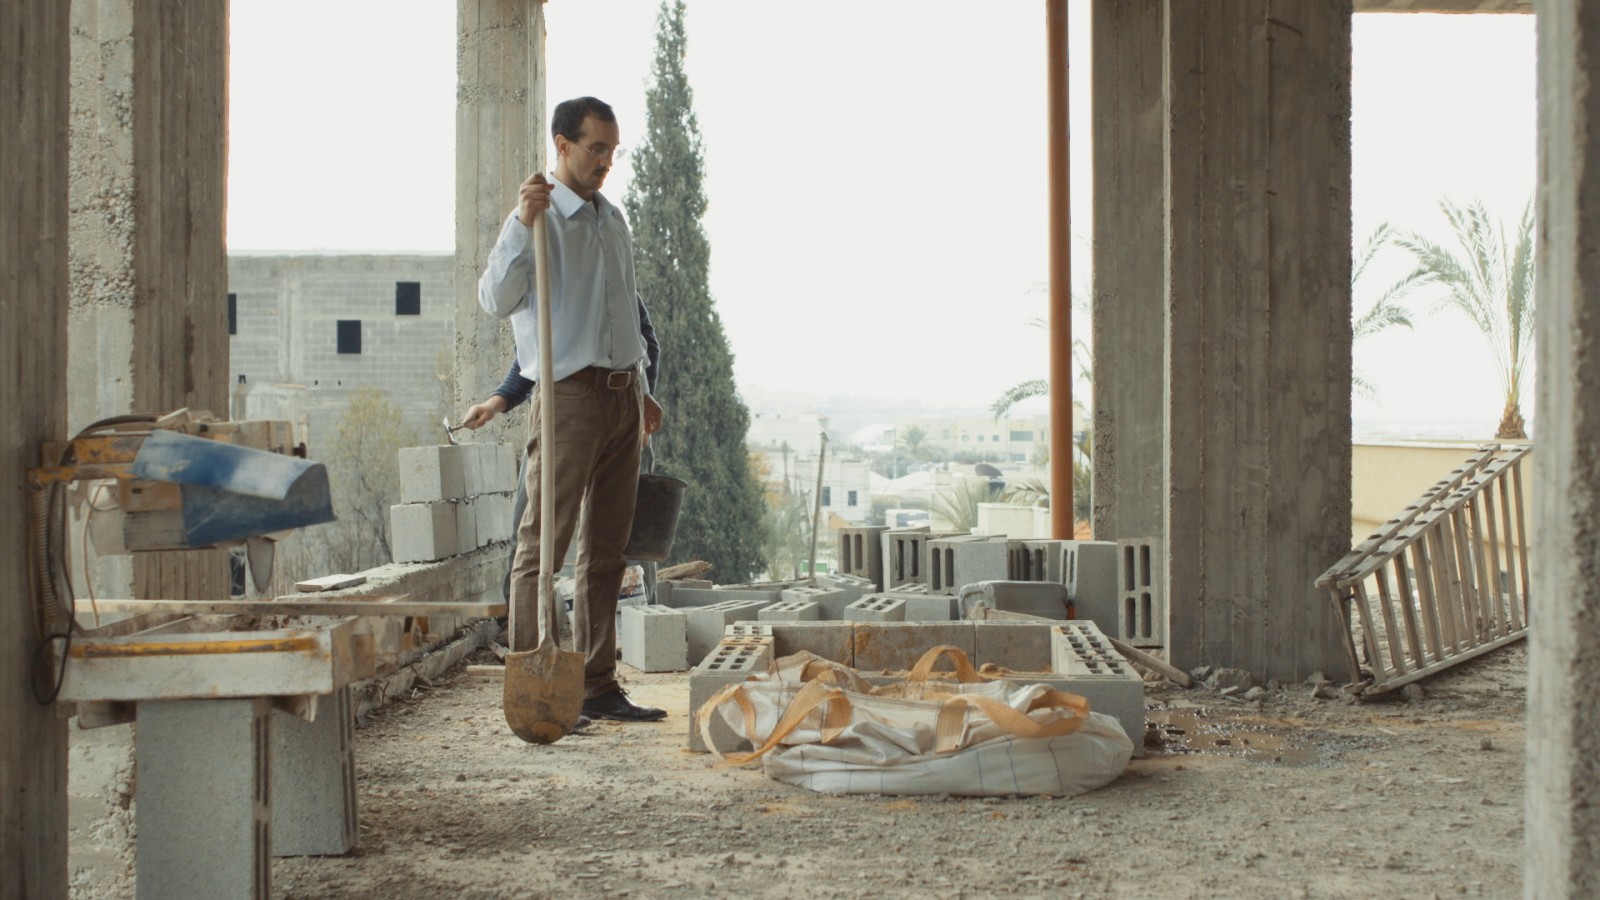 لقطة من فيلم "فراولة" للمخرجة عايدة قعدان